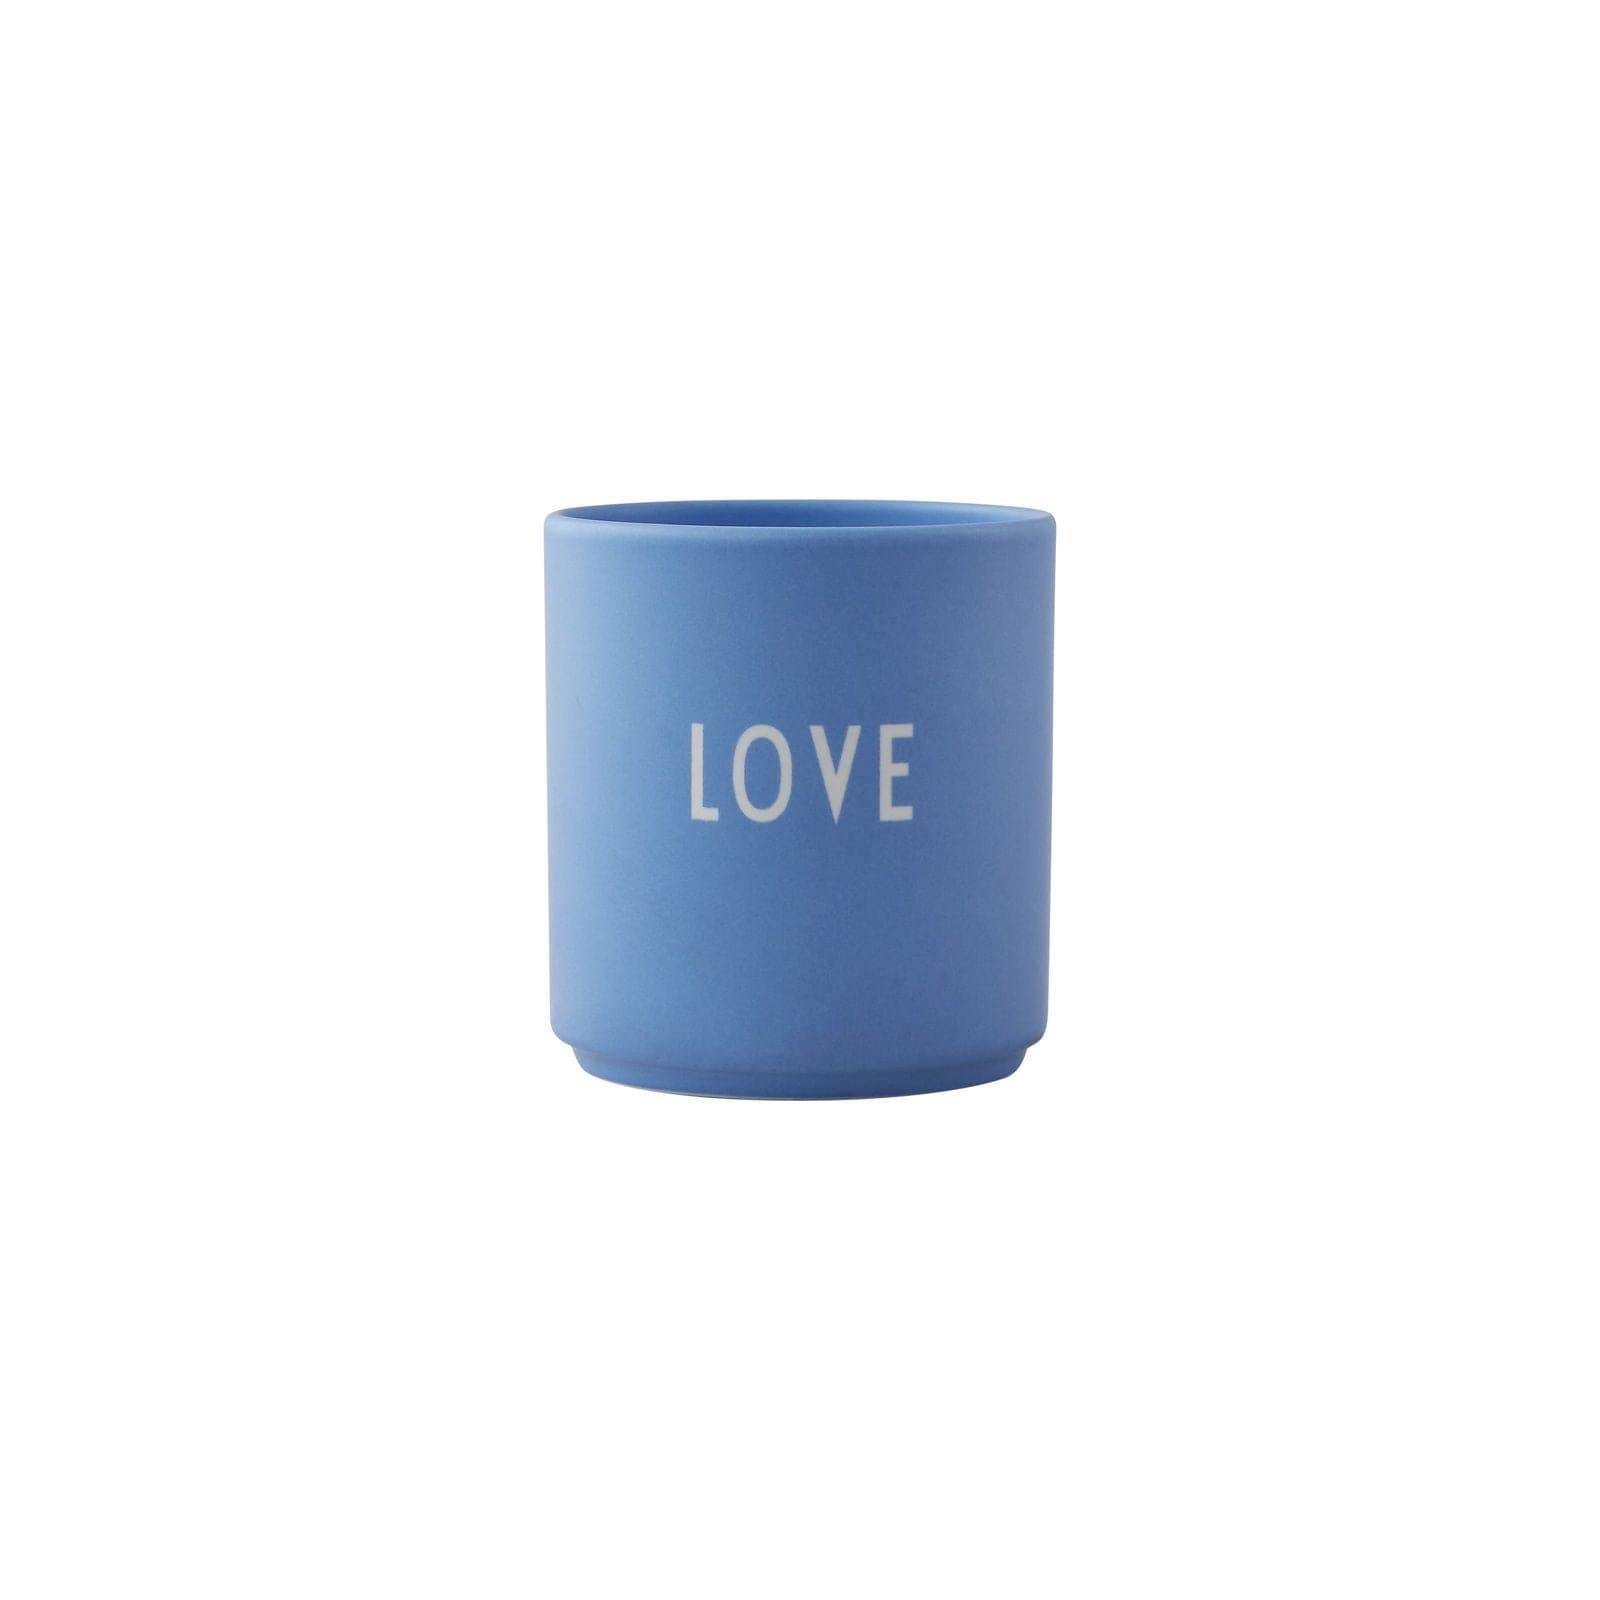 Love de tasse préférée de la lettre de design, bleu ciel